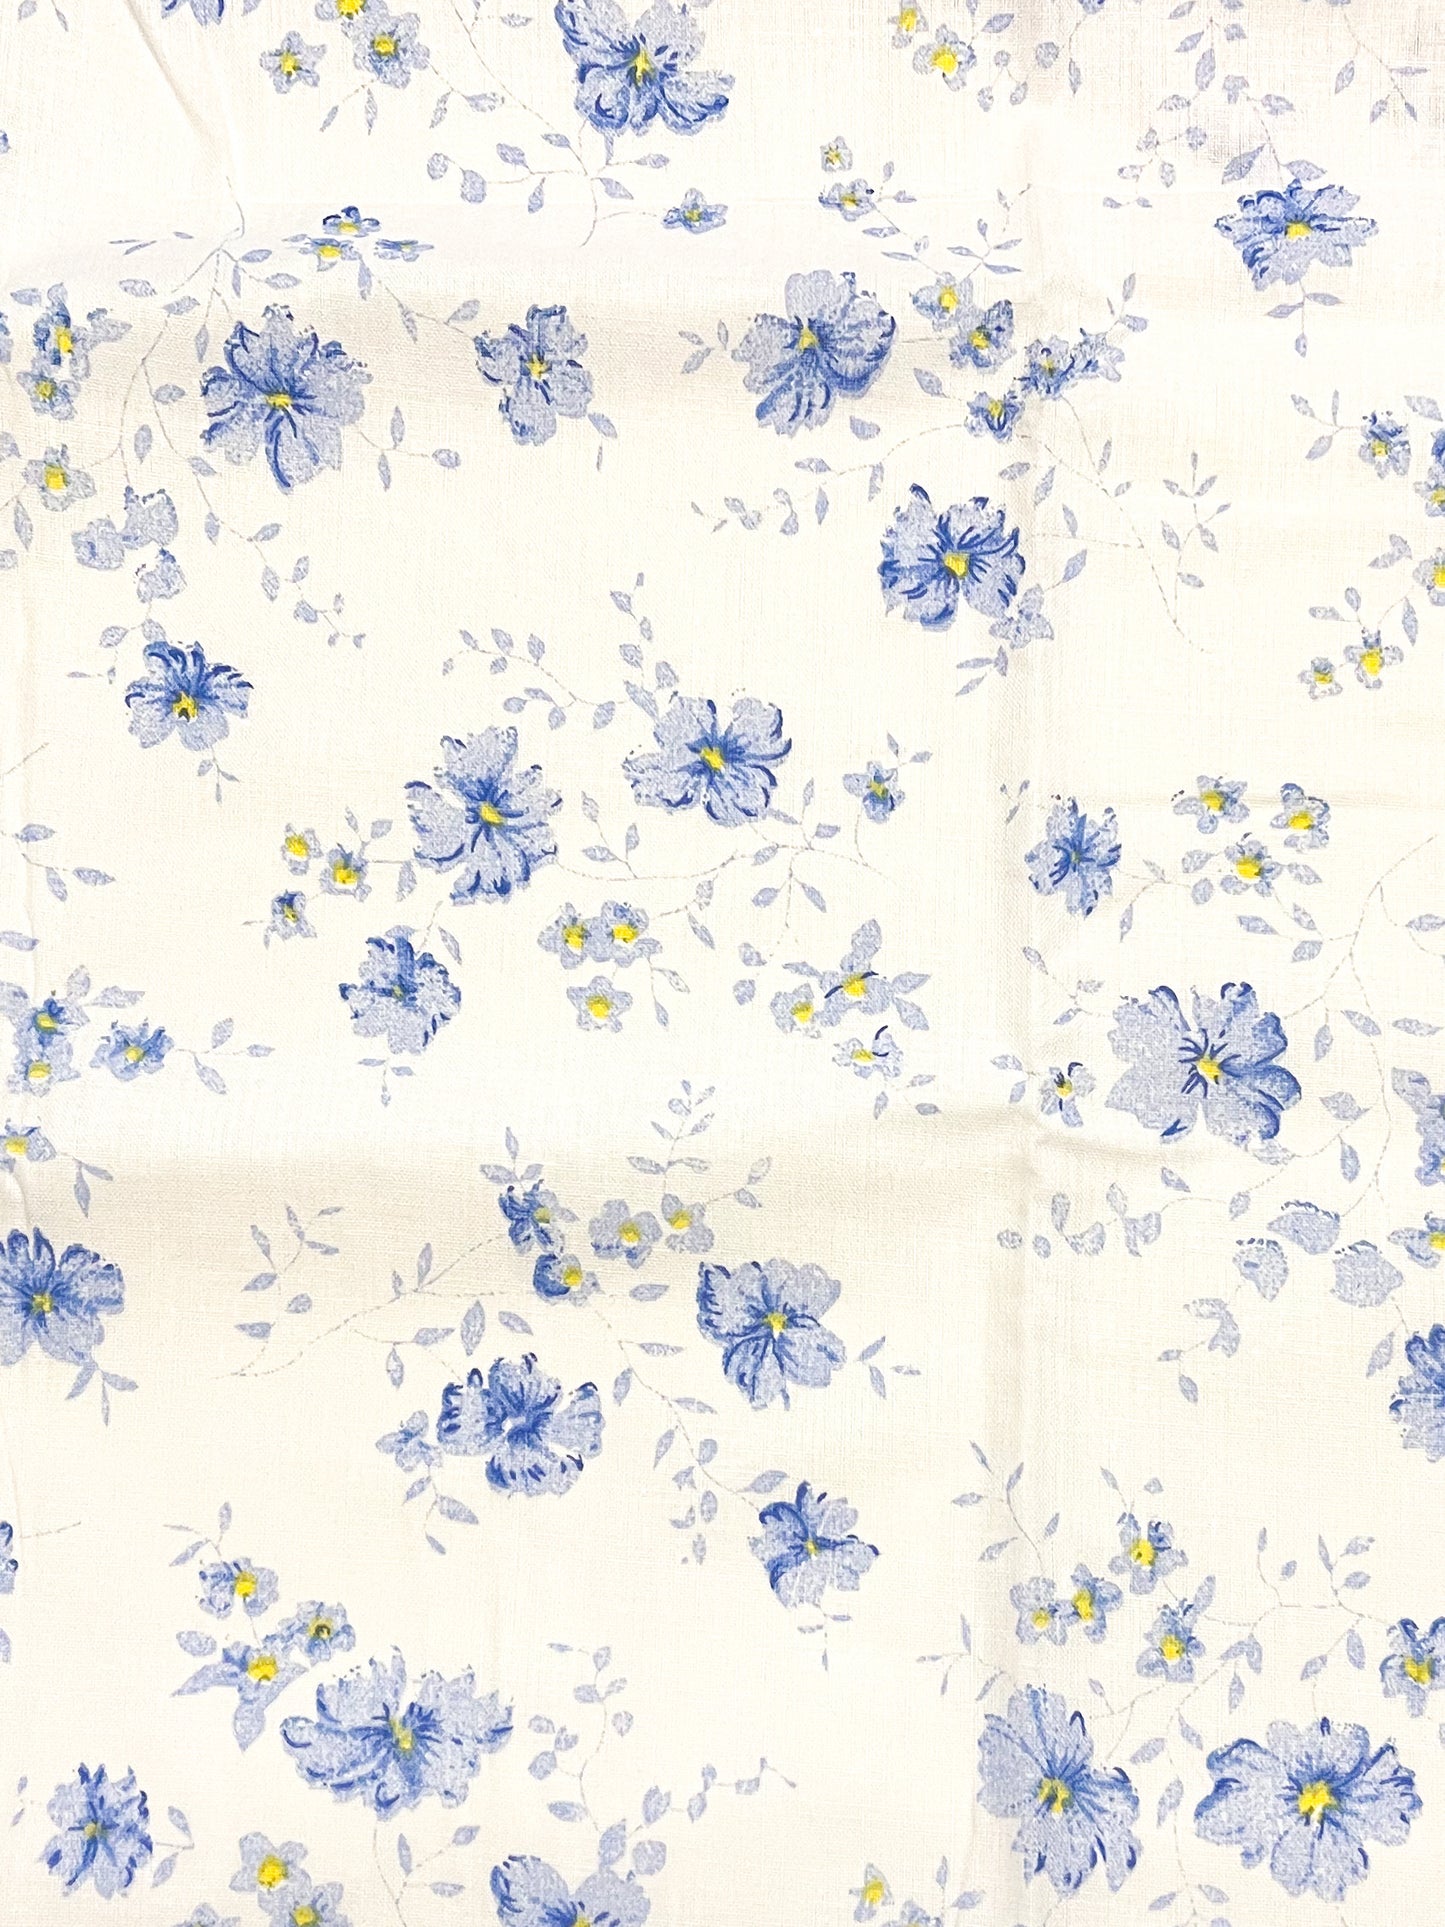 Blue floral blender precut bundle